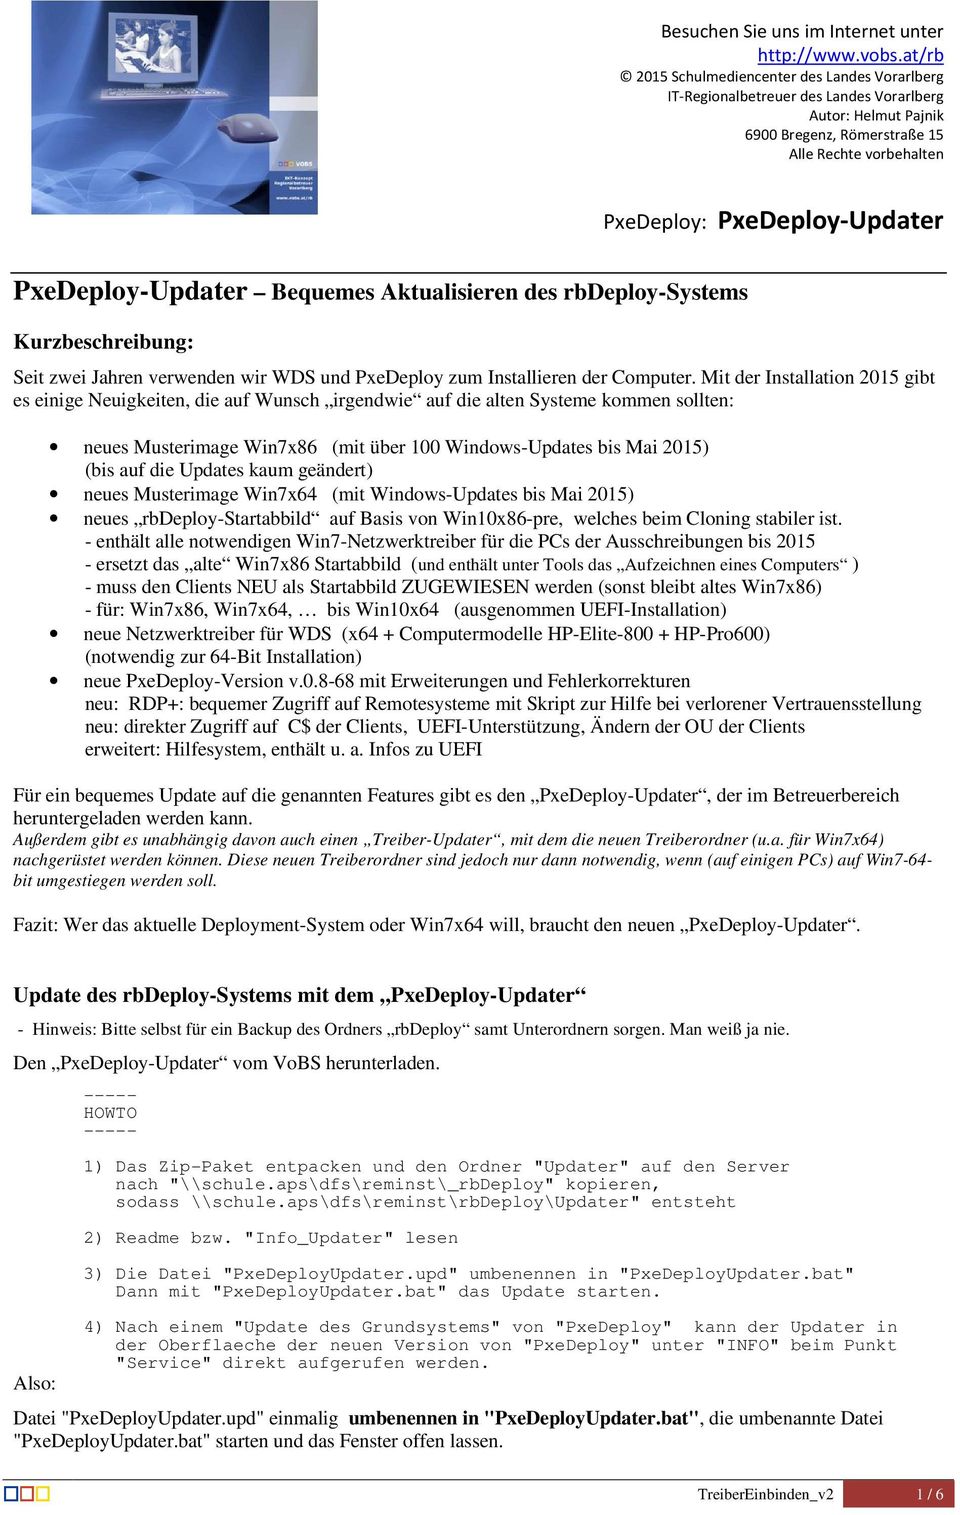 PxeDeploy-Updater Bequemes Aktualisieren des rbdeploy-systems Kurzbeschreibung: Seit zwei Jahren verwenden wir WDS und PxeDeploy zum Installieren der Computer.